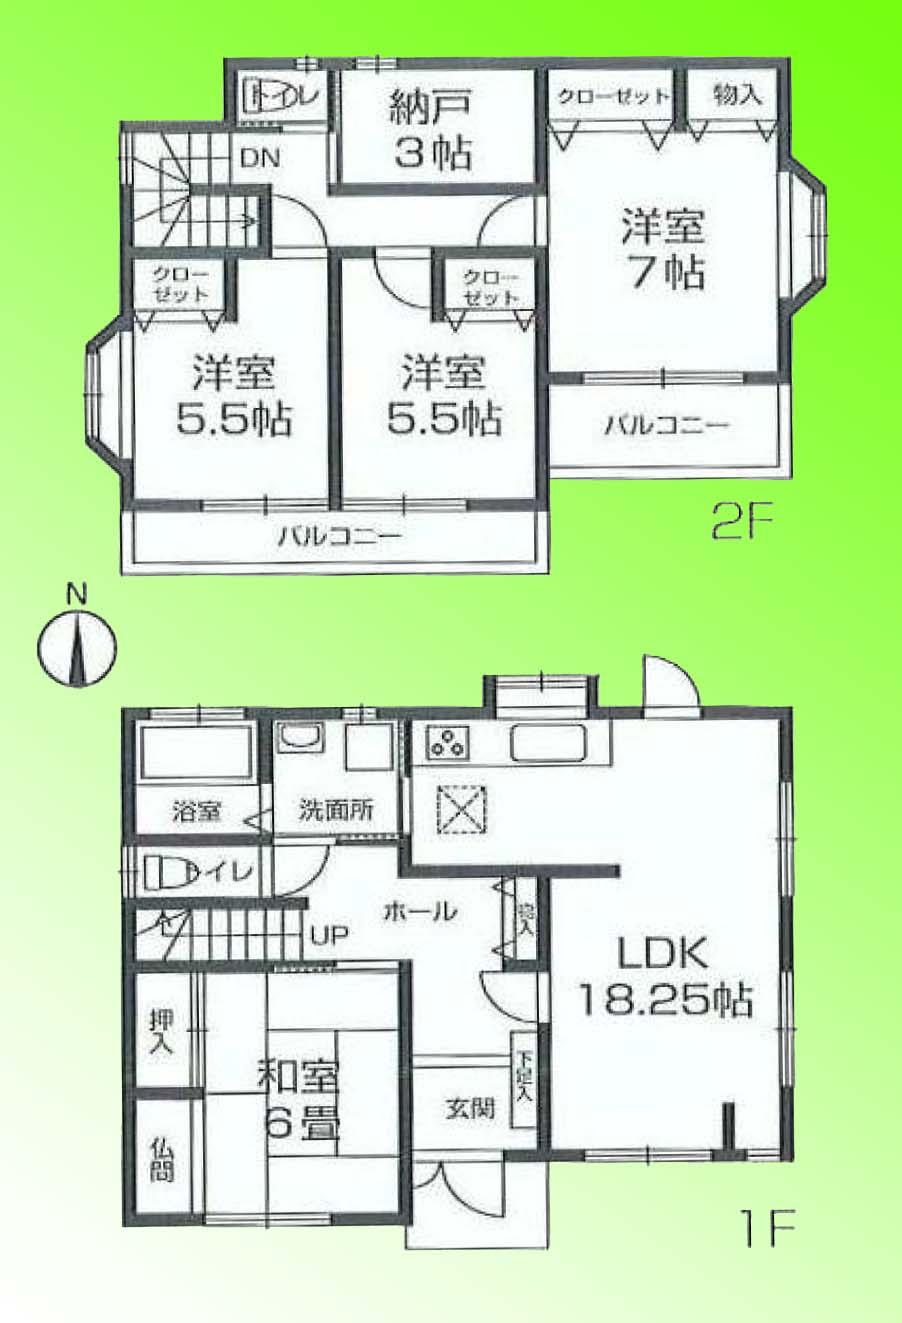 Floor plan. 25,300,000 yen, 4LDK + S (storeroom), Land area 208.15 sq m , Building area 97.71 sq m floor plan ☆